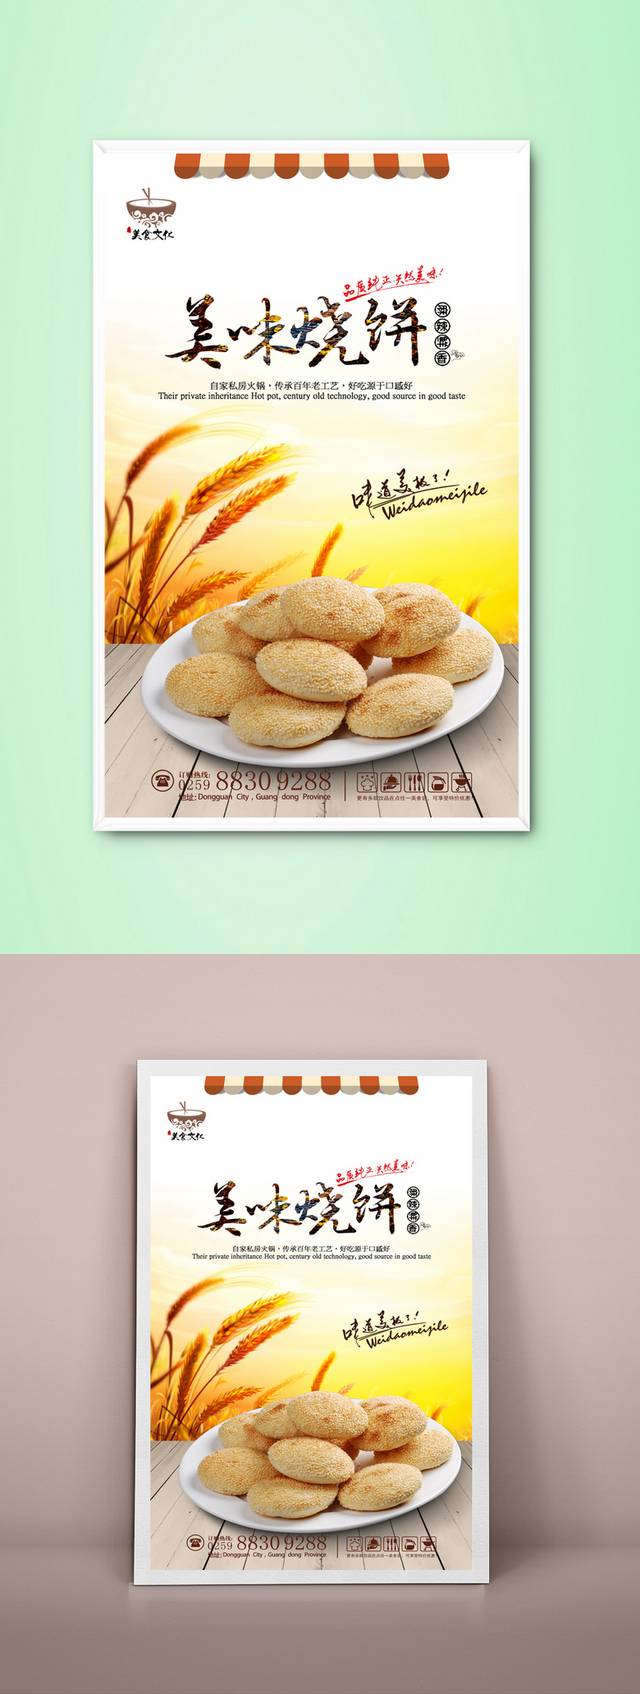 中国风烧饼店海报